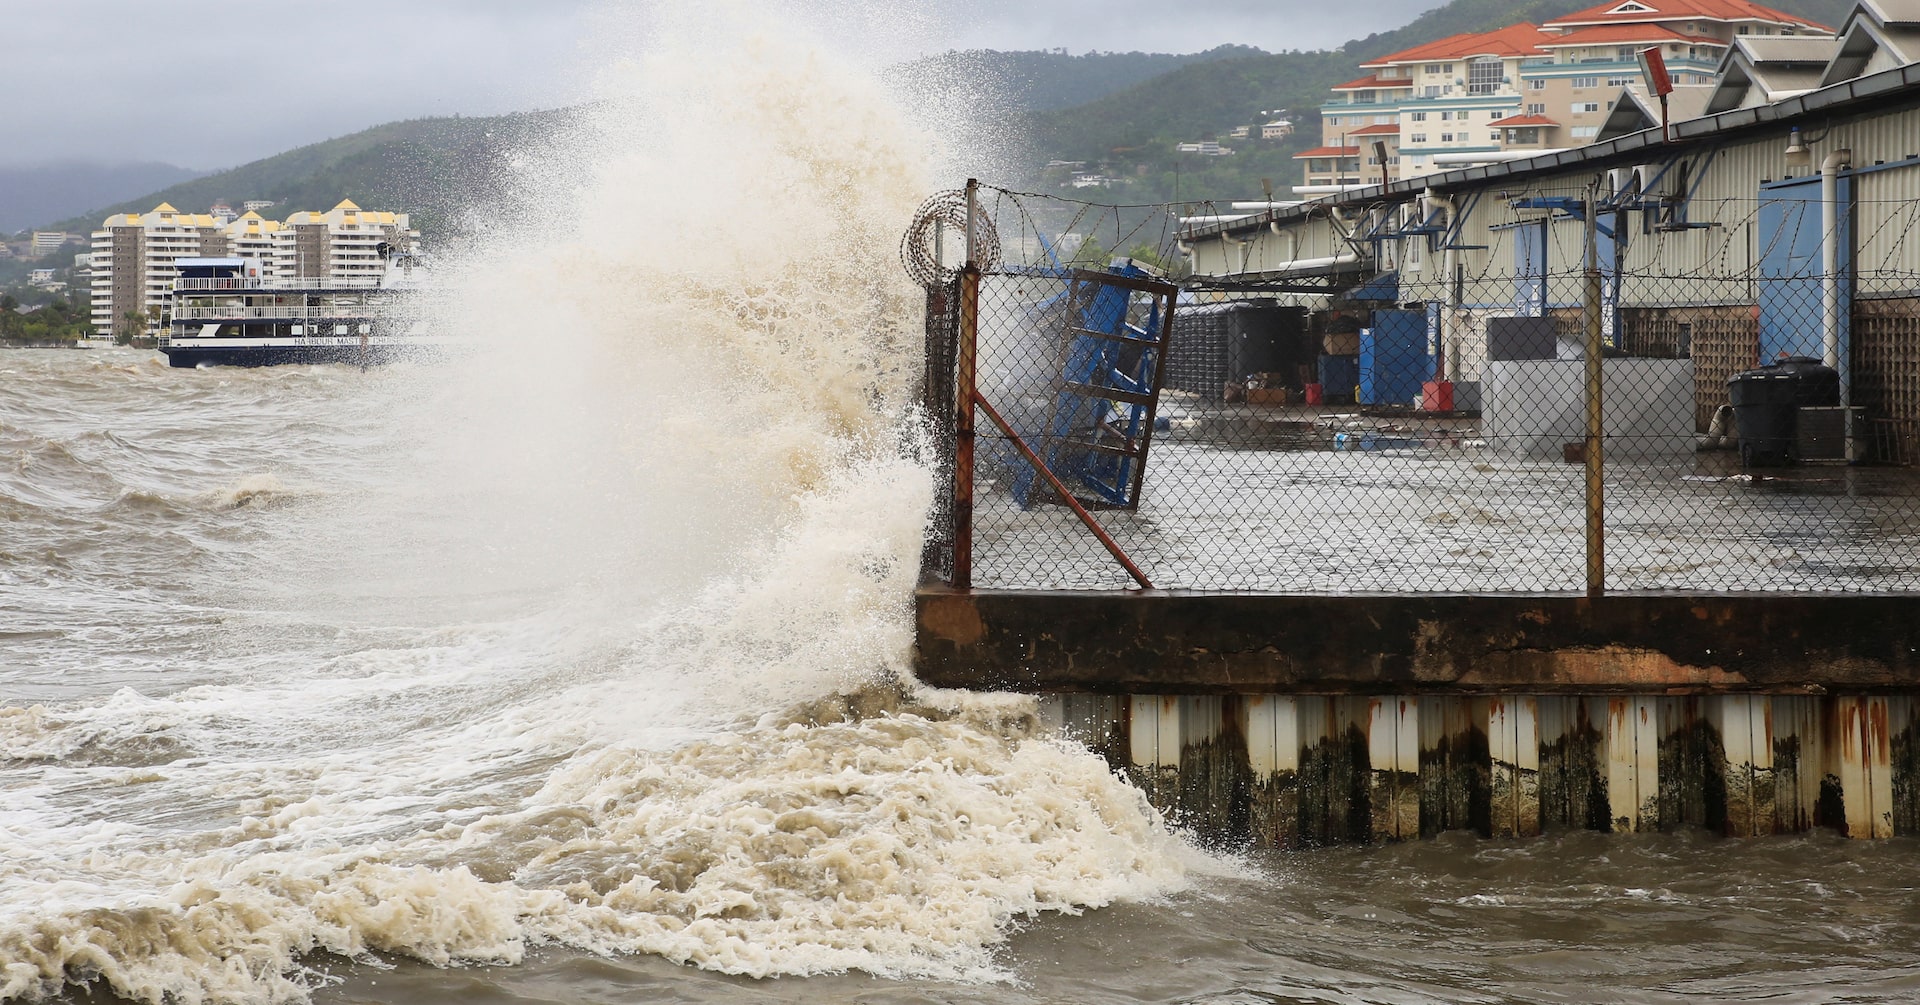 カリブ海に「極めて危険」なハリケーン、停電など強風被害